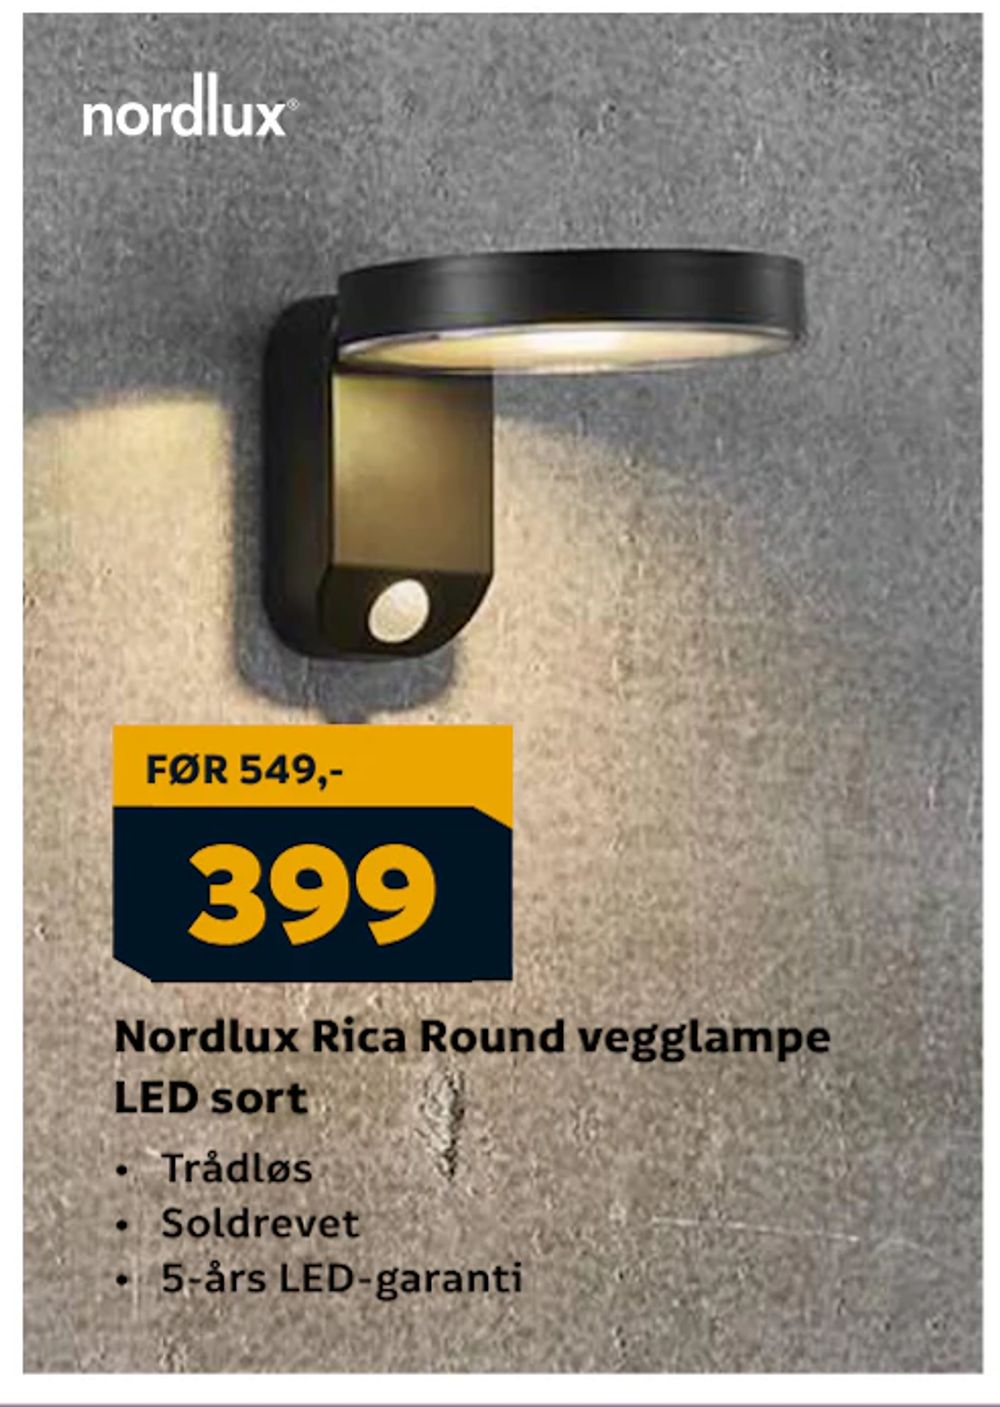 Tilbud på Nordlux Rica Round vegglampe LED sort fra Megaflis til 399 kr